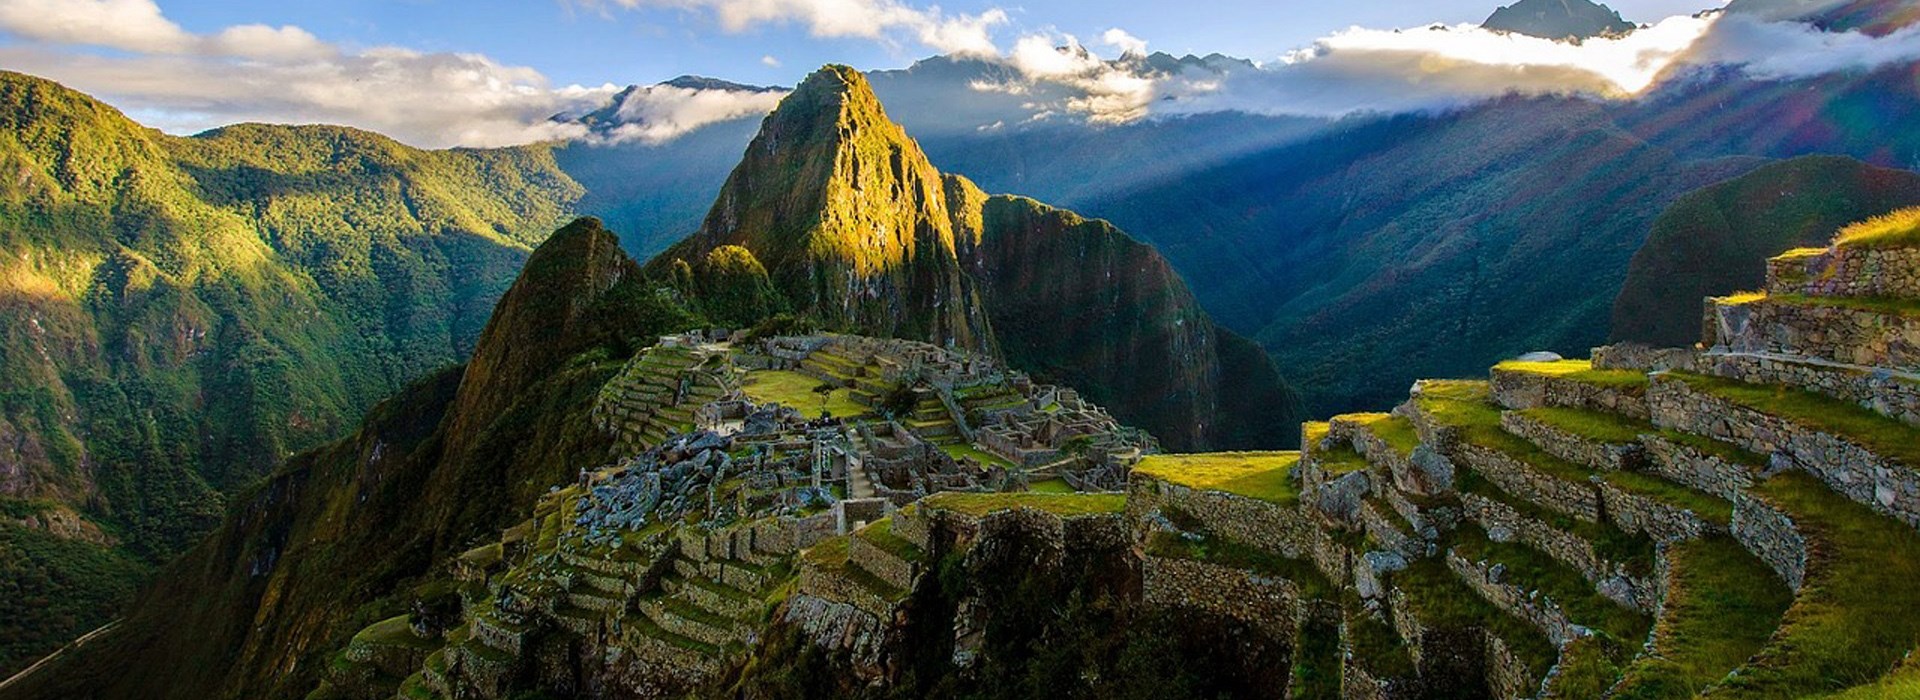 Visiter Le Machu Picchu - Pérou